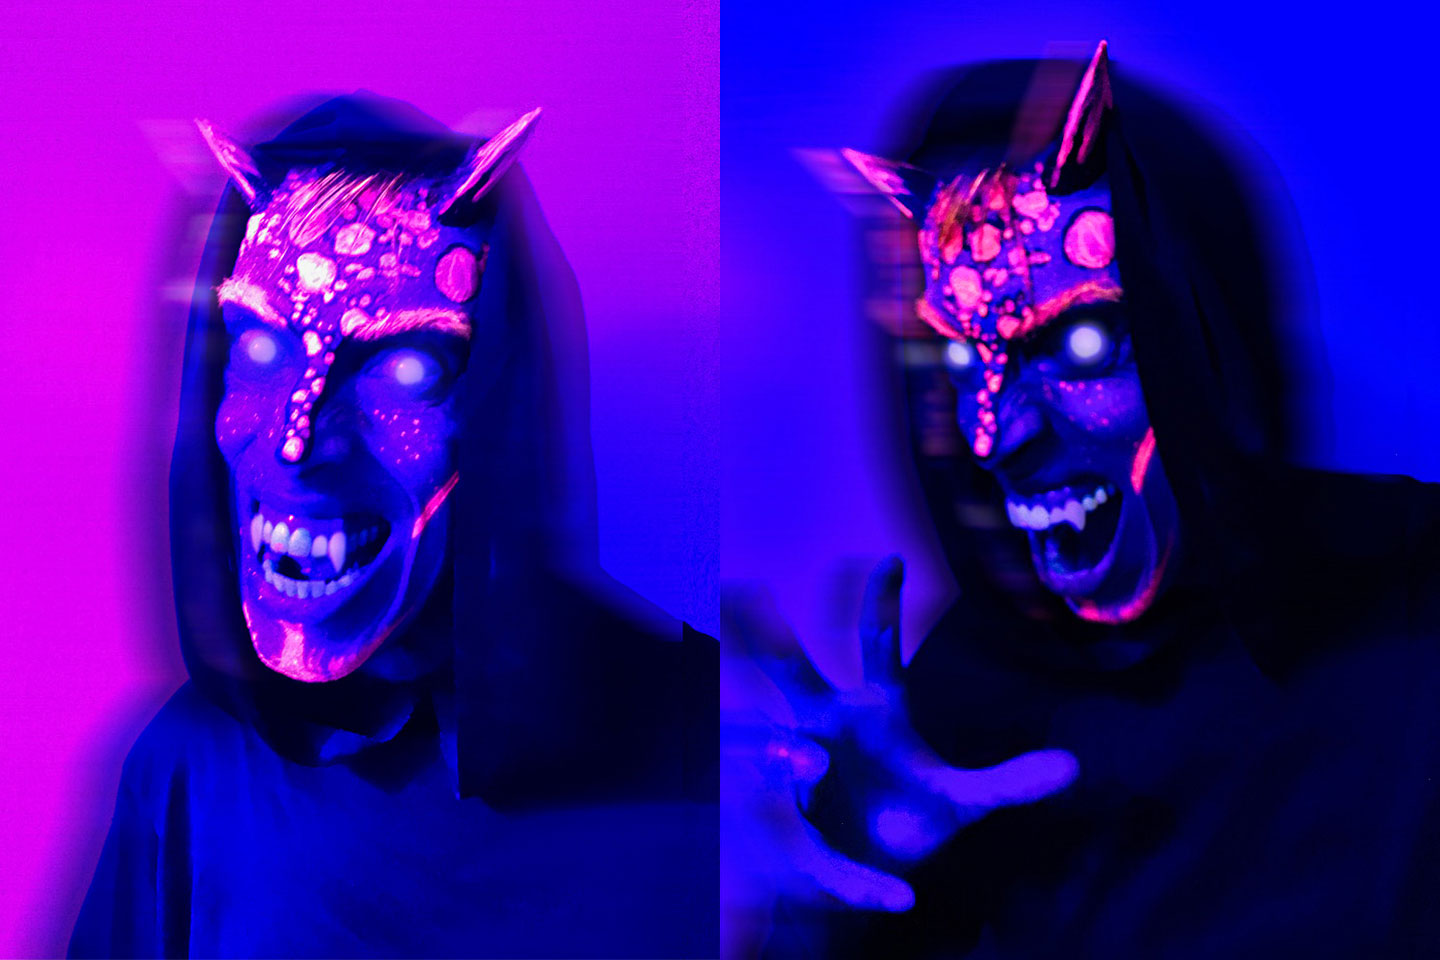 Neon Demon